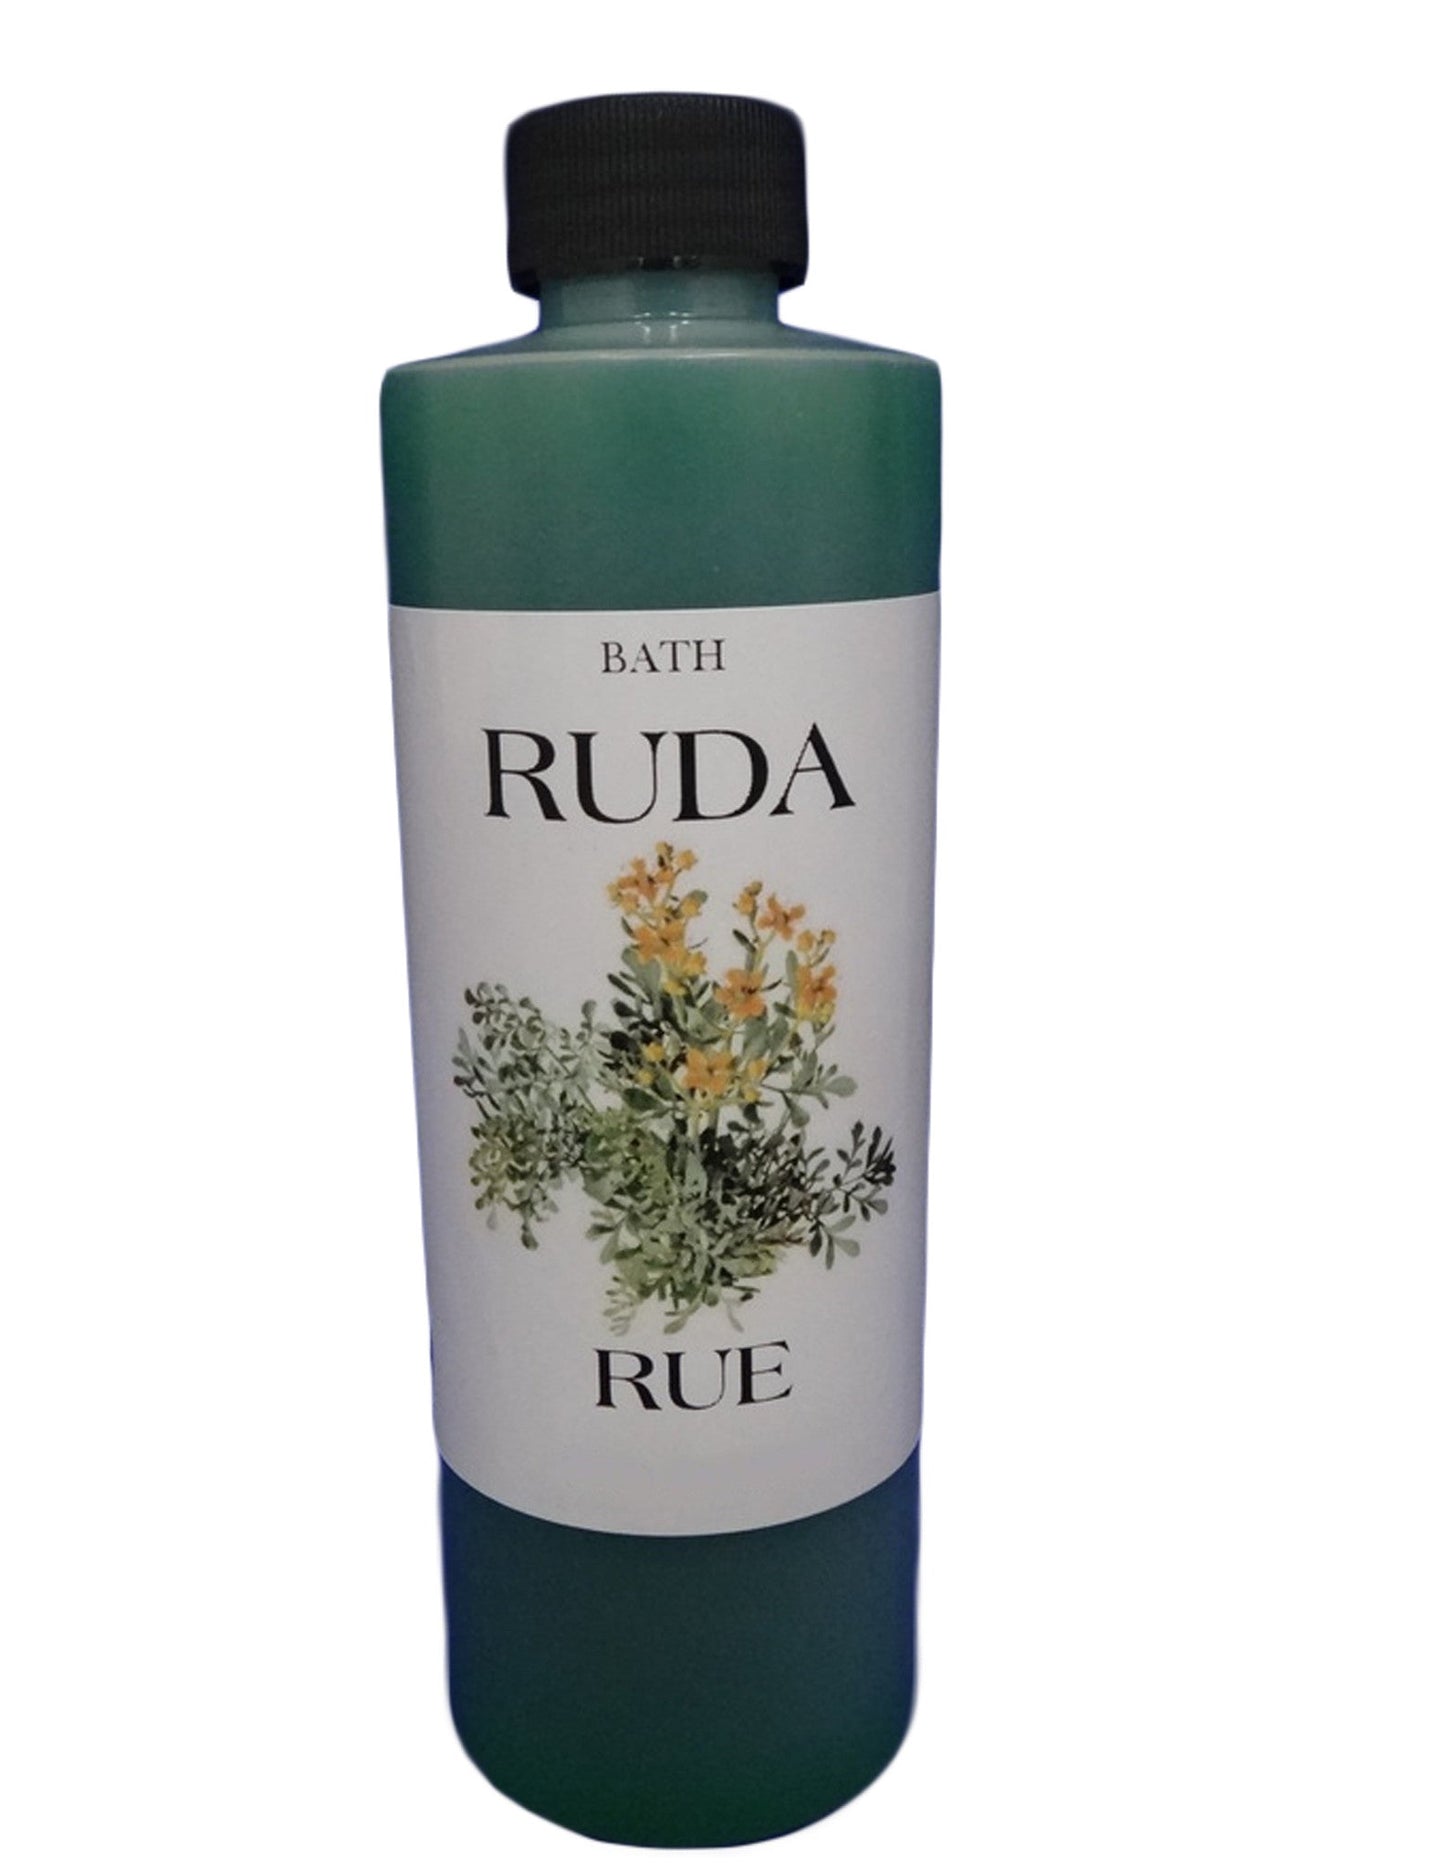 Rue/Ruda-Bath